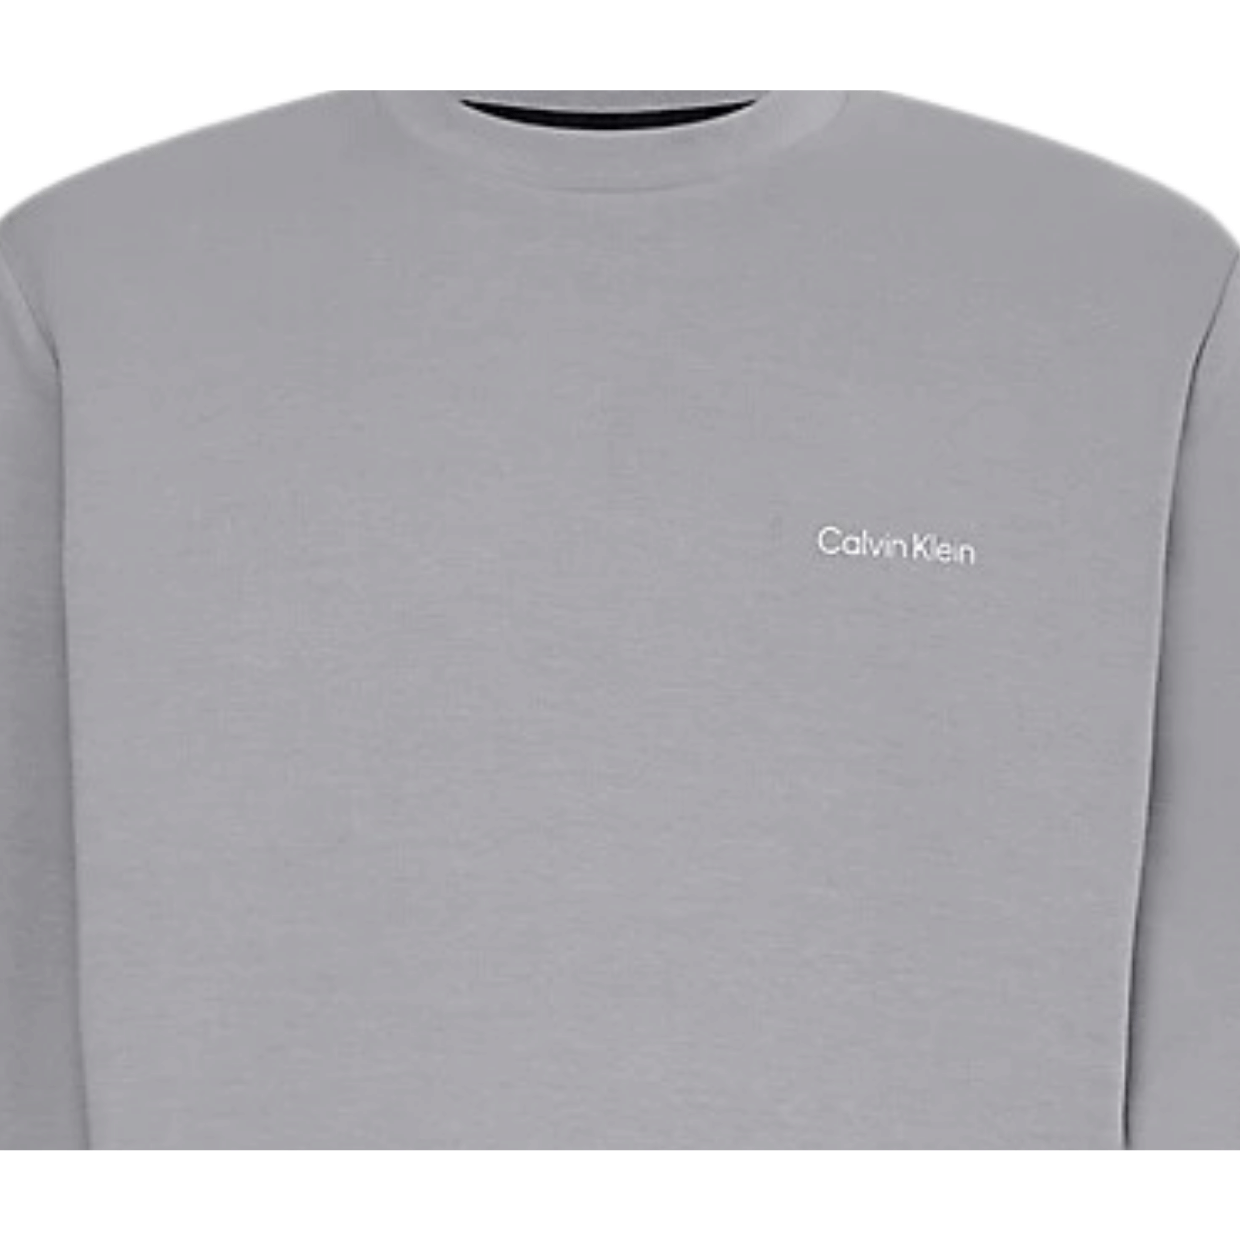 Calvin Klein Grey Sweater